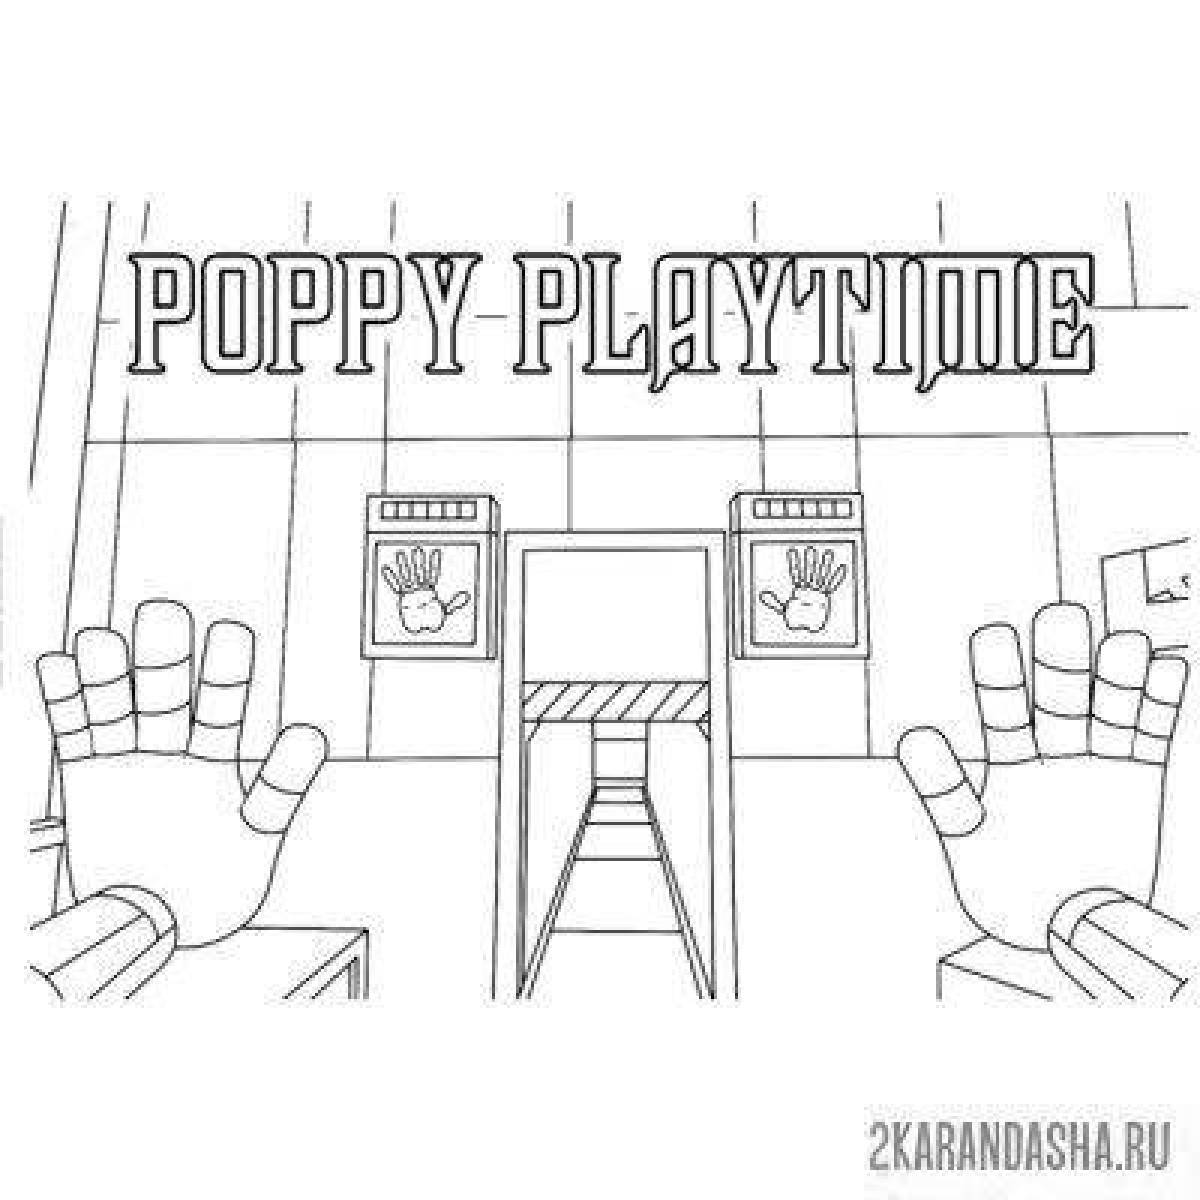 Shine poppy playtime player